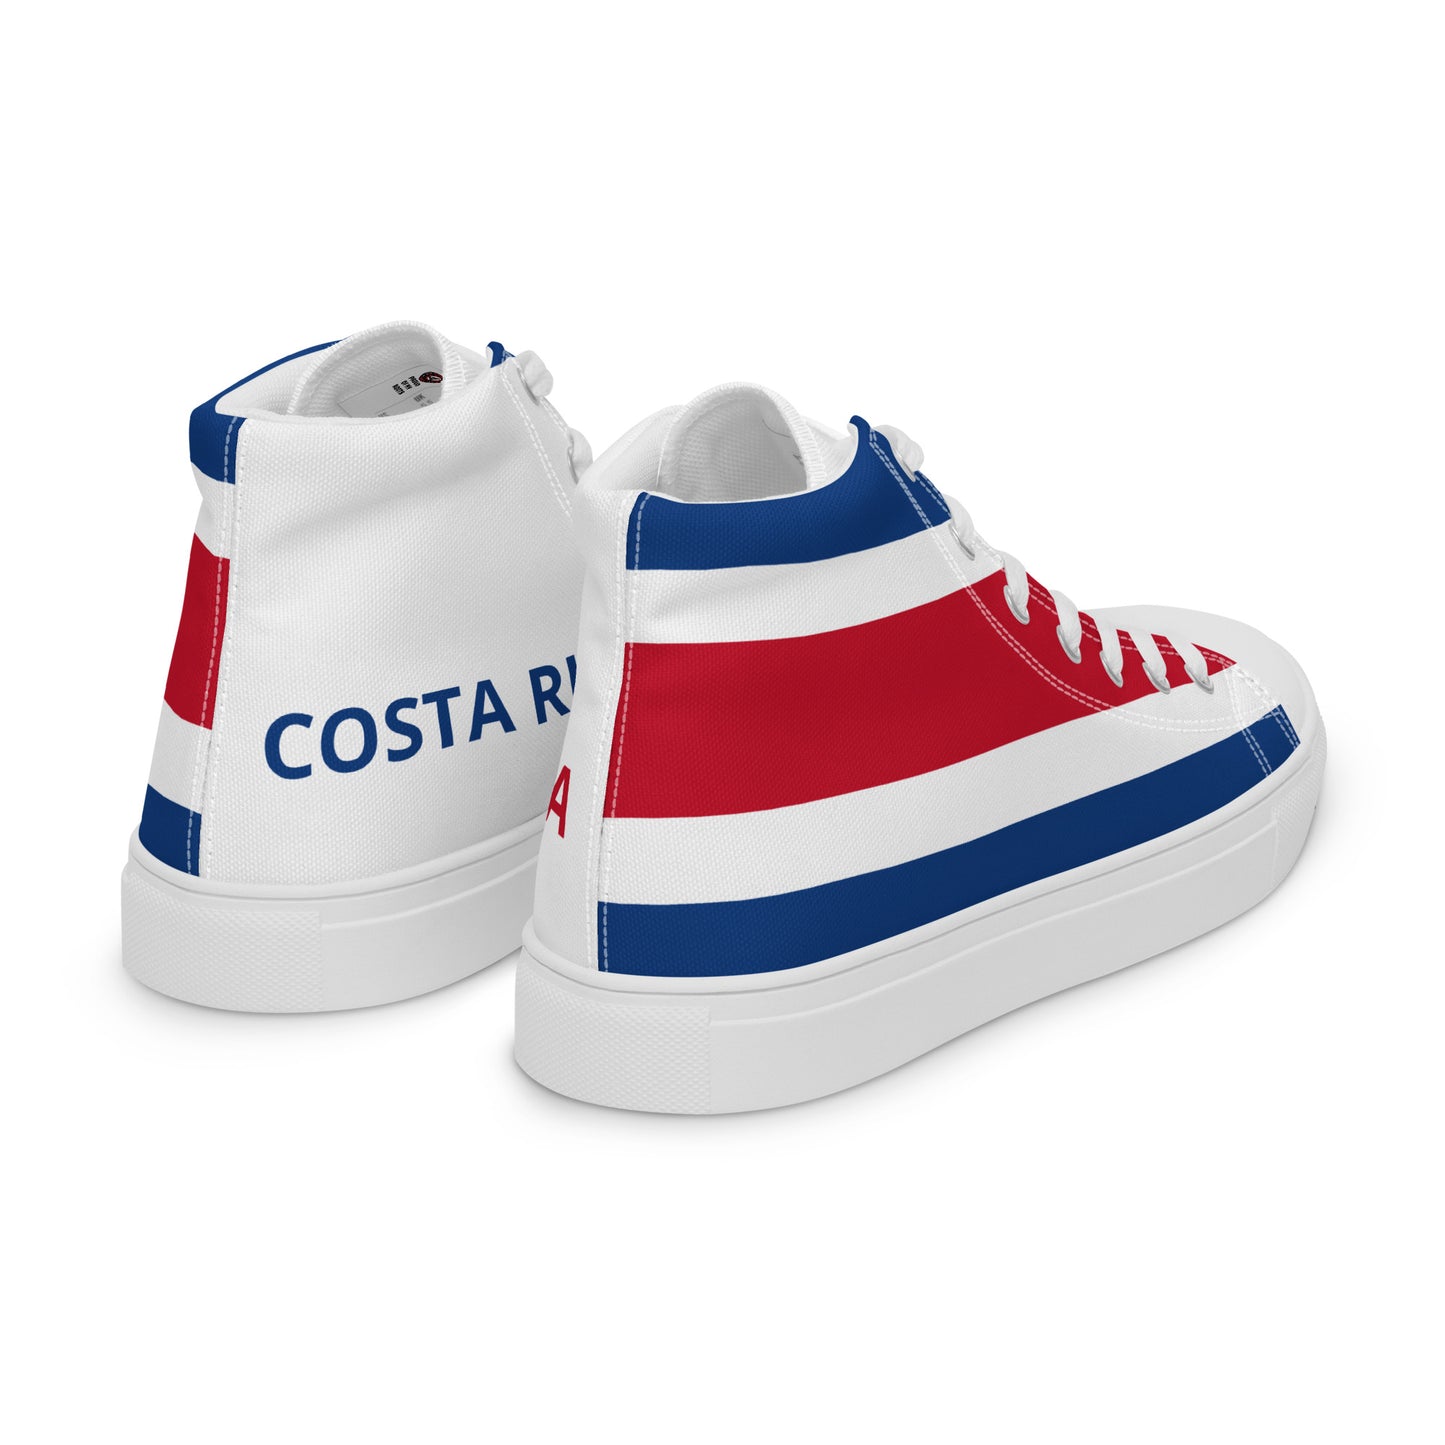 Costa Rica - Women - Bandera - High top shoes